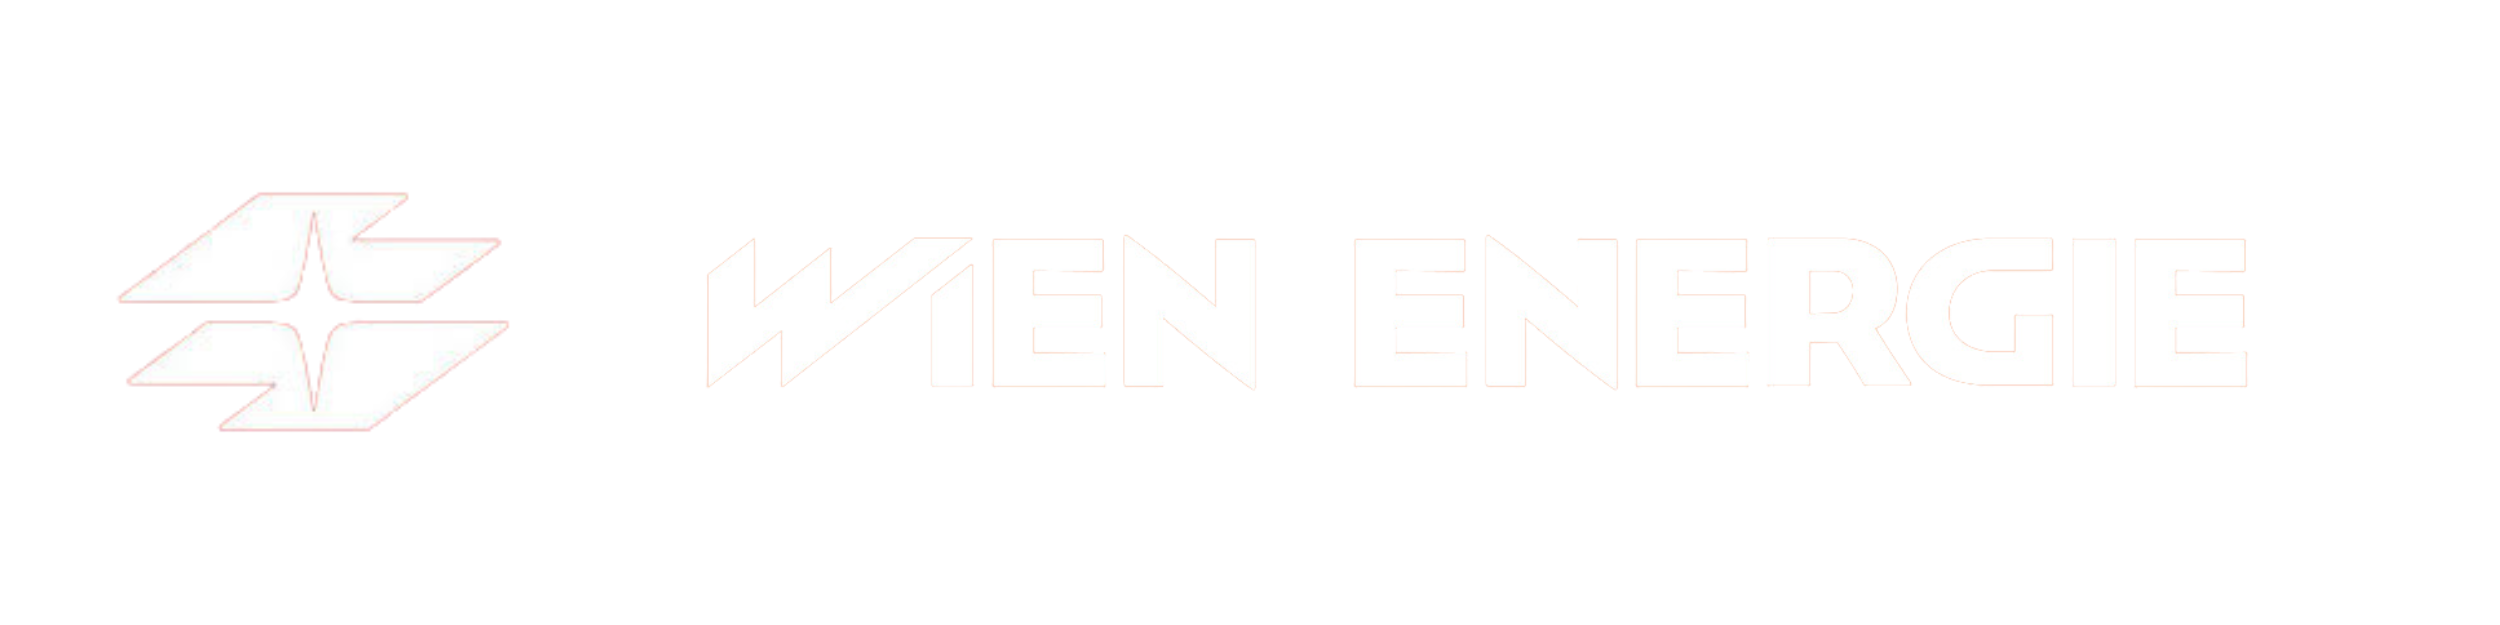 8 Wien Energie Logo